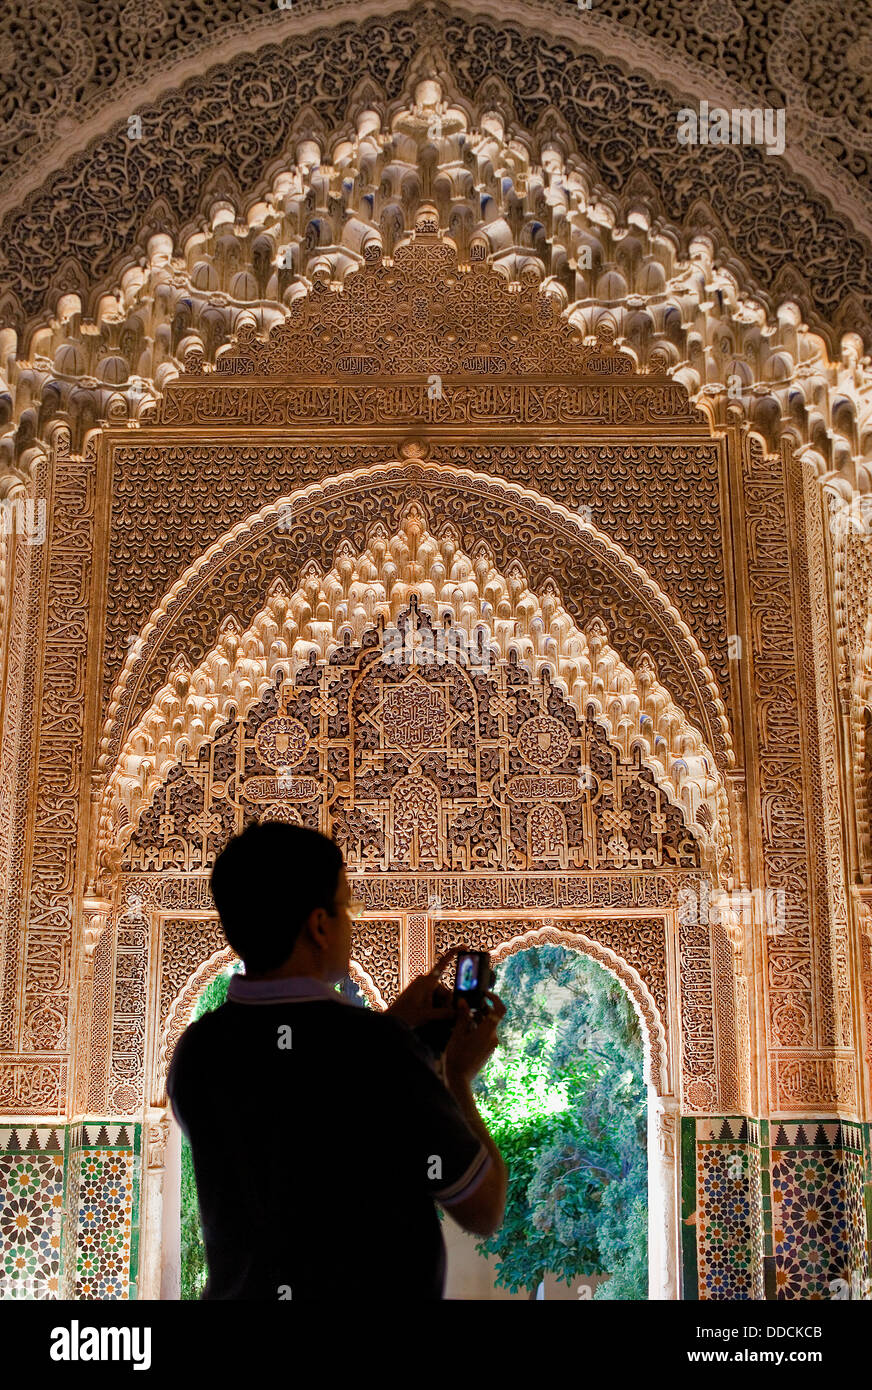 Turista en el mirador de Daraxa o Lindáraja, en Aljimeces hall, el Palacio de Los Leones, La Alhambra, Granada, Andalucía, España Foto de stock